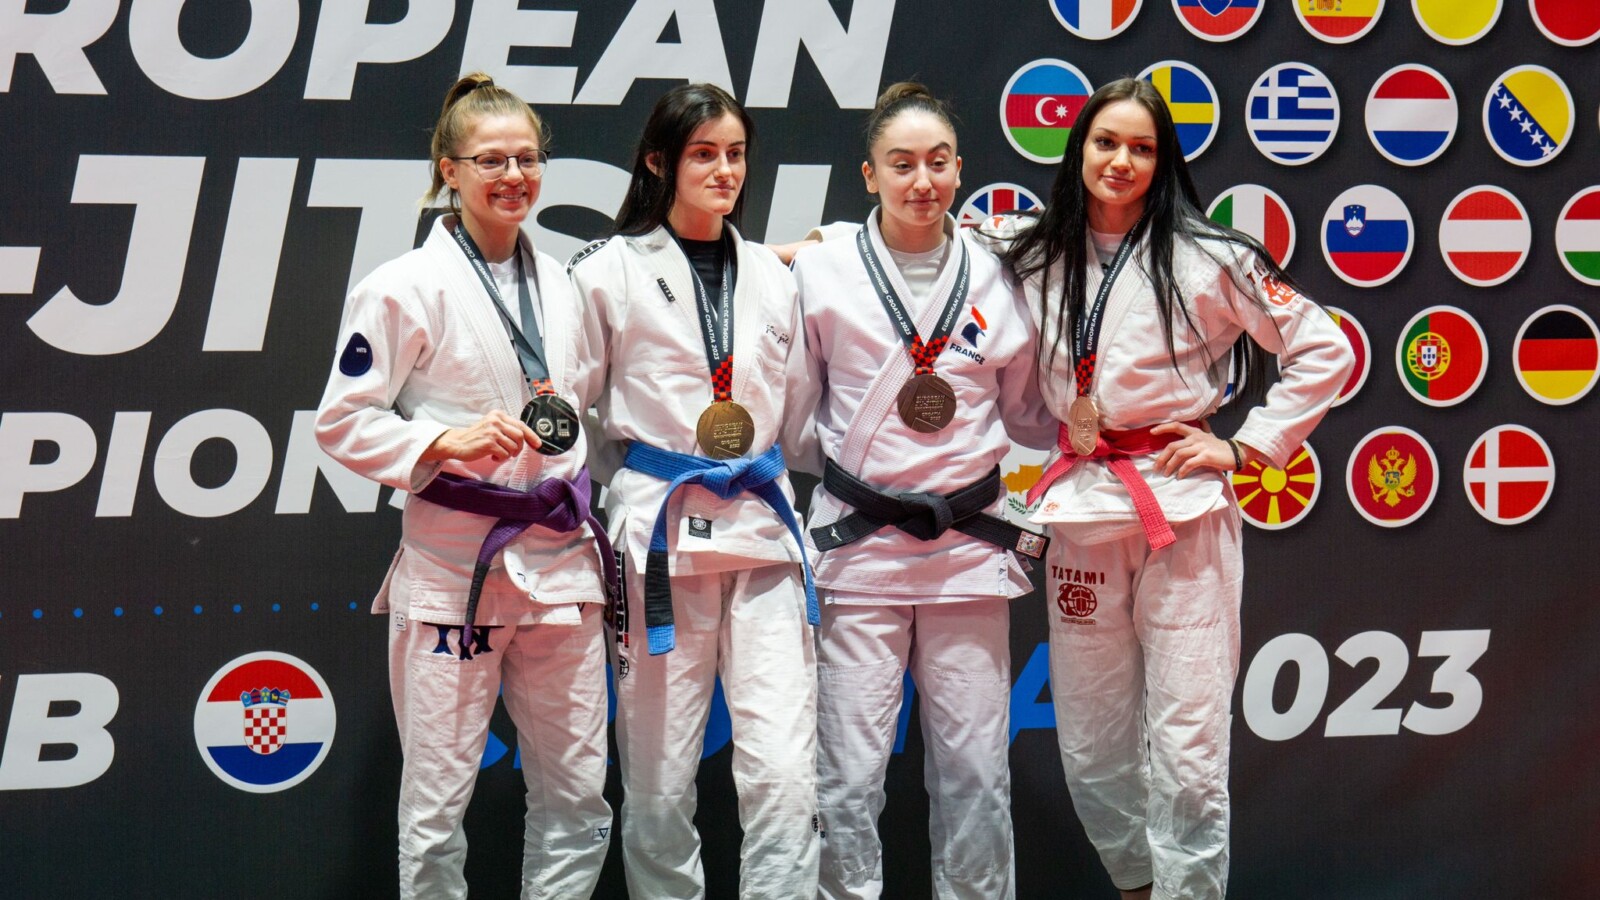 שרה קובליוב (משמאל) על הפודיום באליפות אירופה (צילום: חואן לופז, התאחדות אילת)